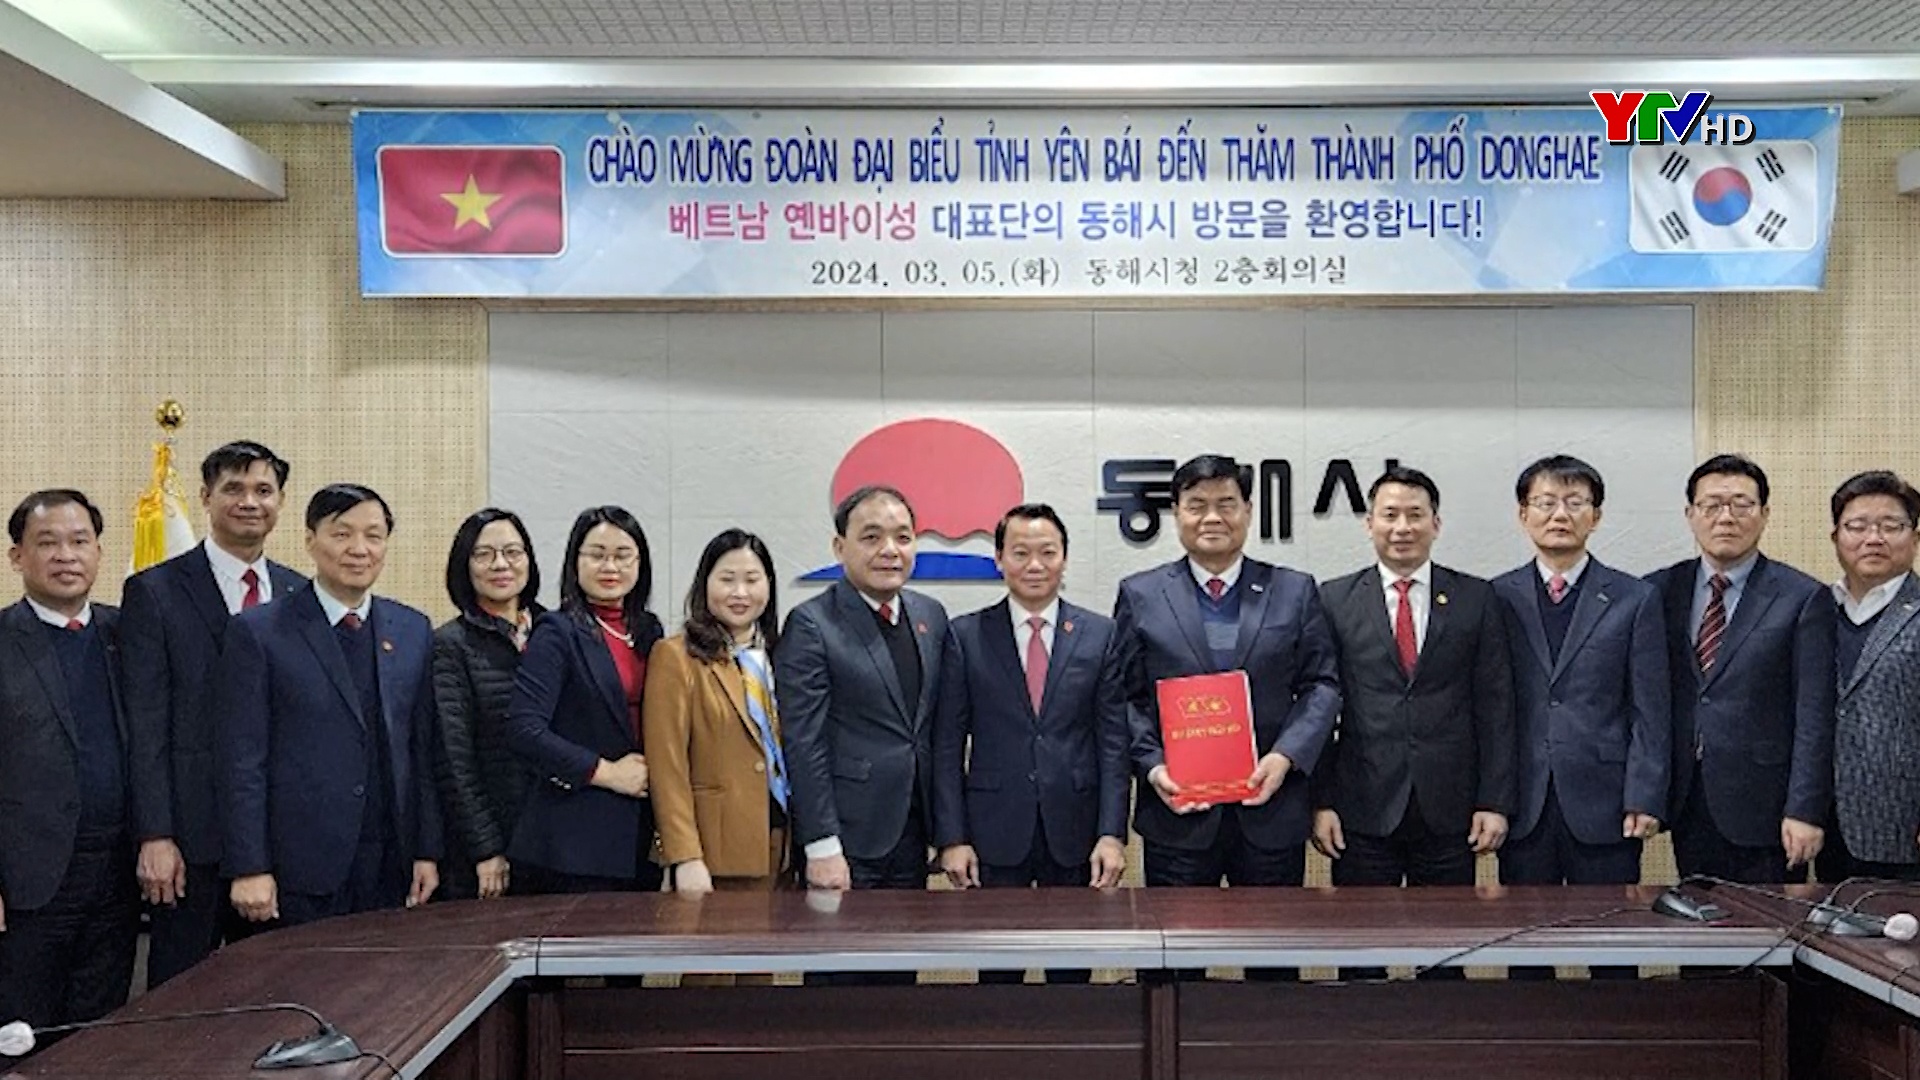 Đoàn công tác của tỉnh Yên Bái làm việc với chính quyền thành phố Donghae, tỉnh Gangwon, Hàn Quốc